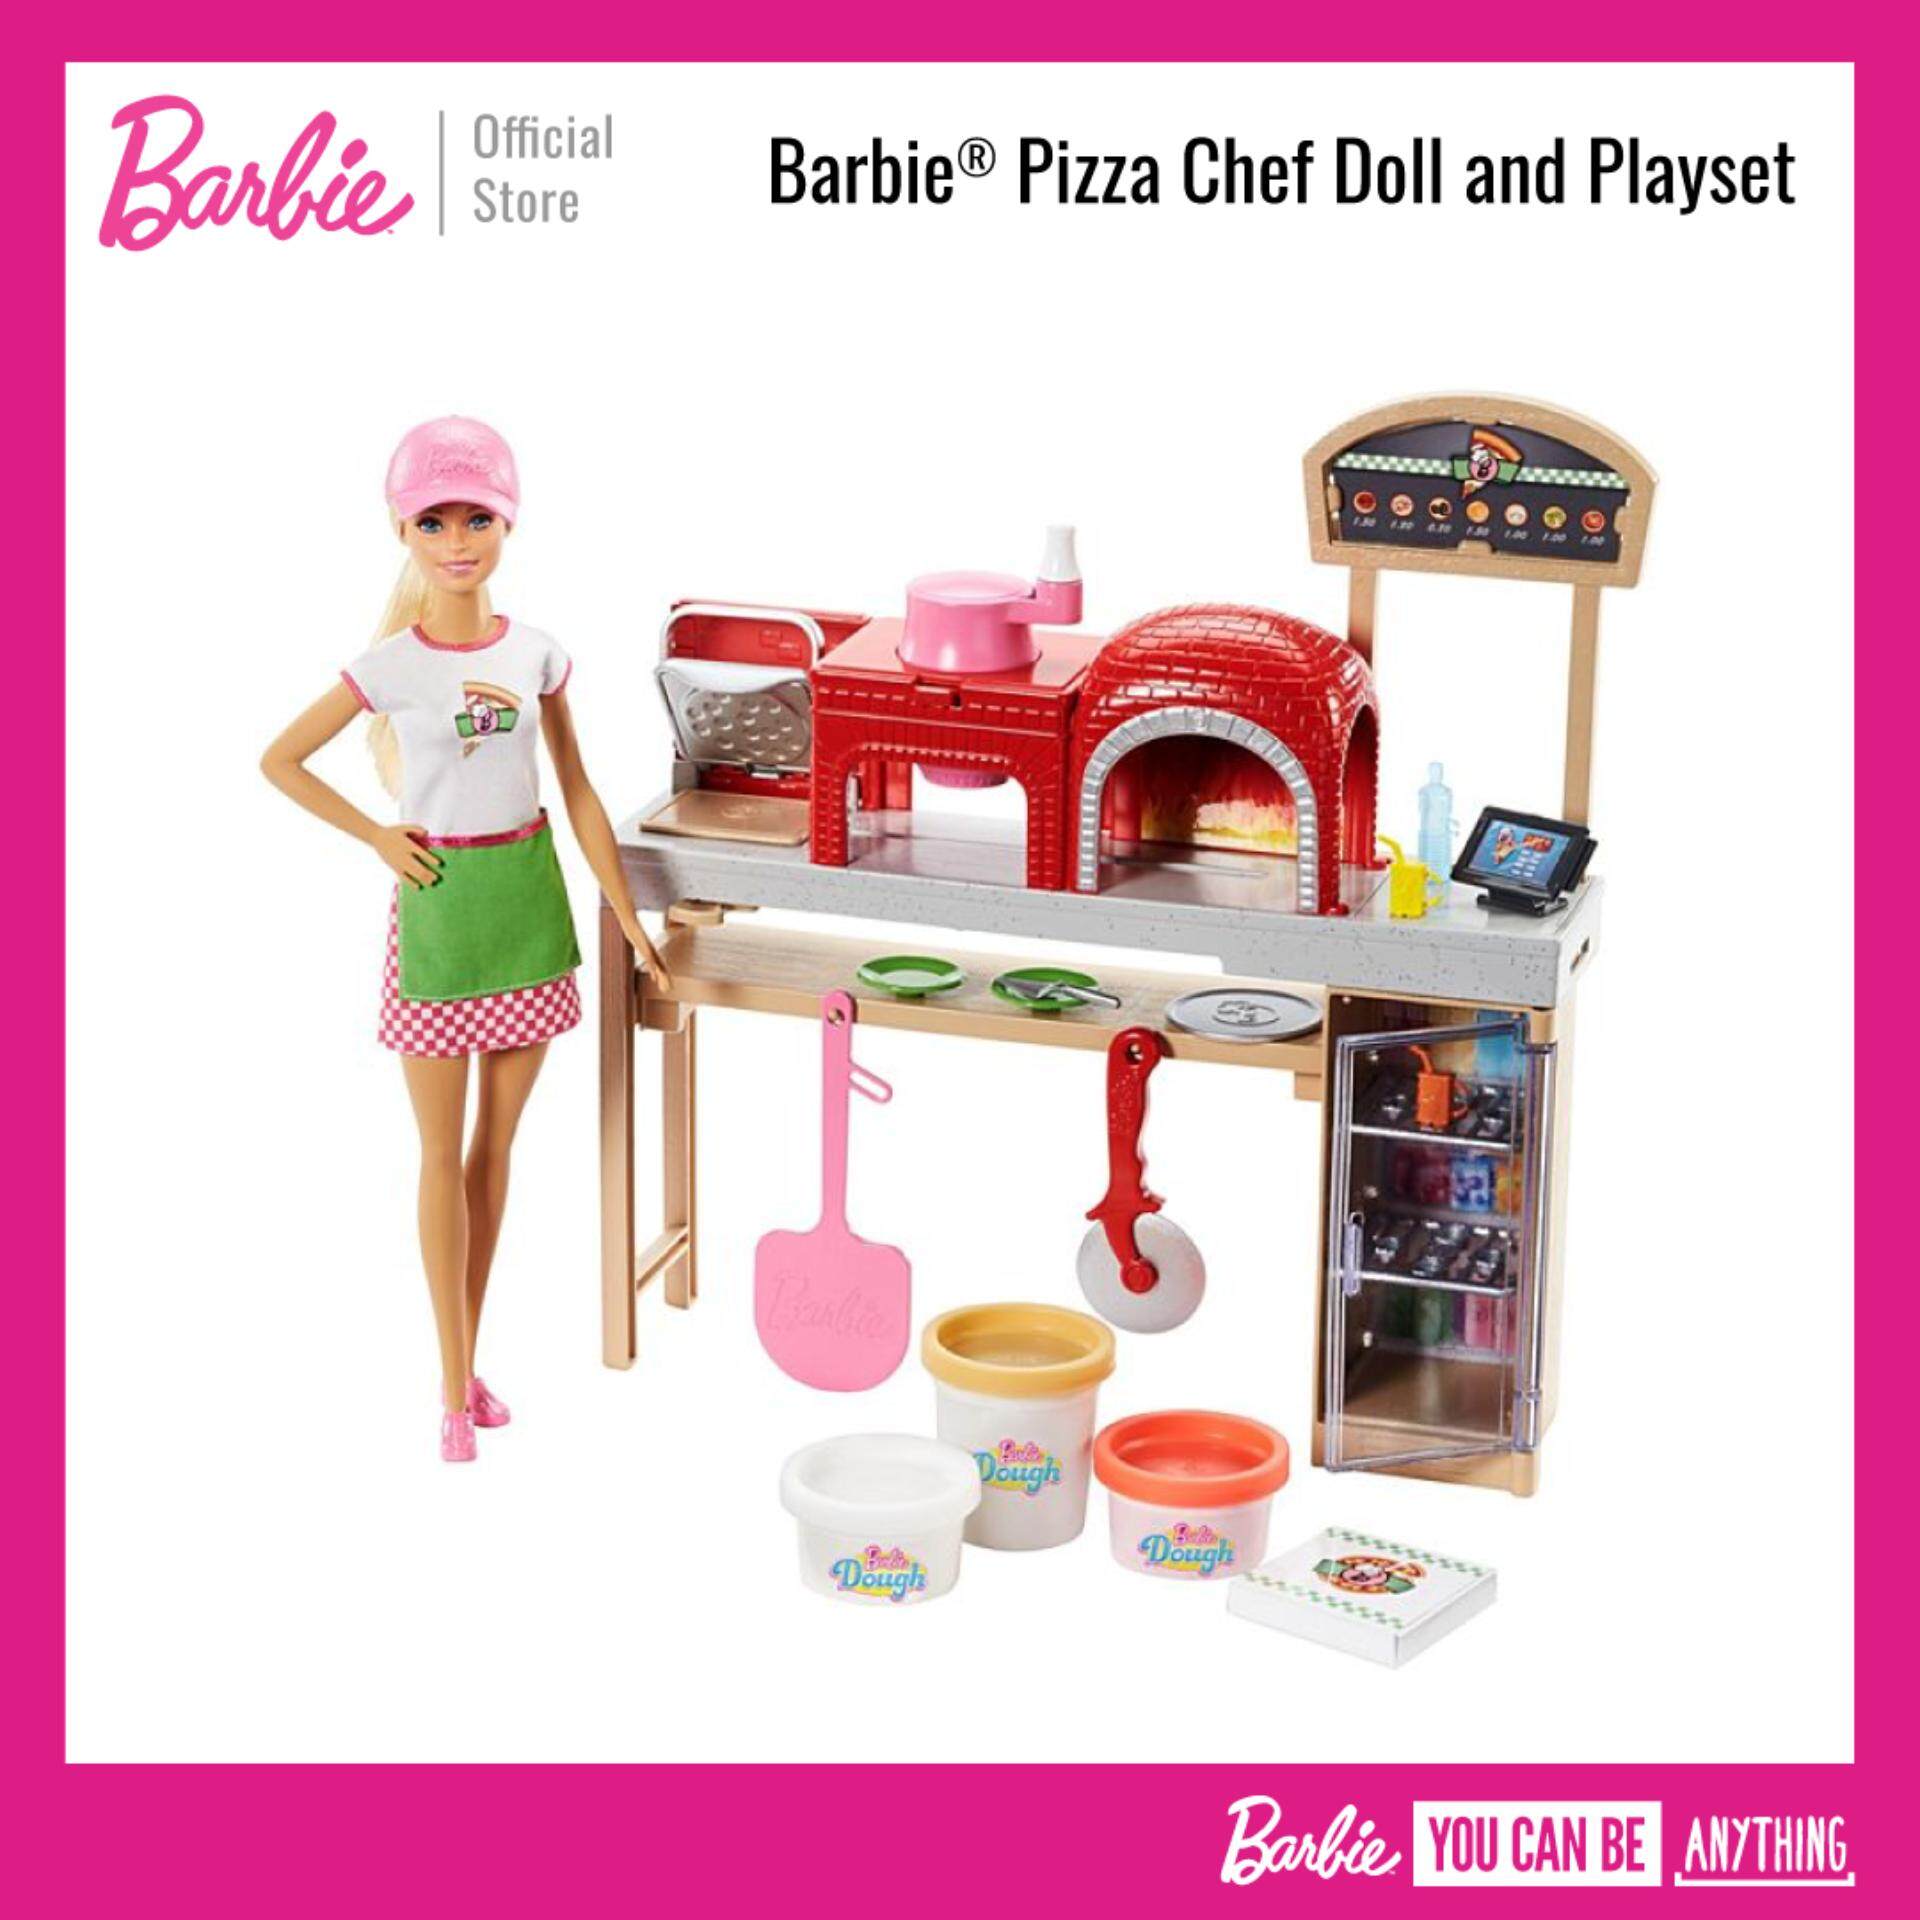 Barbie® Pizza Chef Doll and Playset ตุ๊กตา บาร์บี้ ชุดของเล่น เชฟพิซซ่า (ของเล่นเด็ก, ตุ๊กตา)